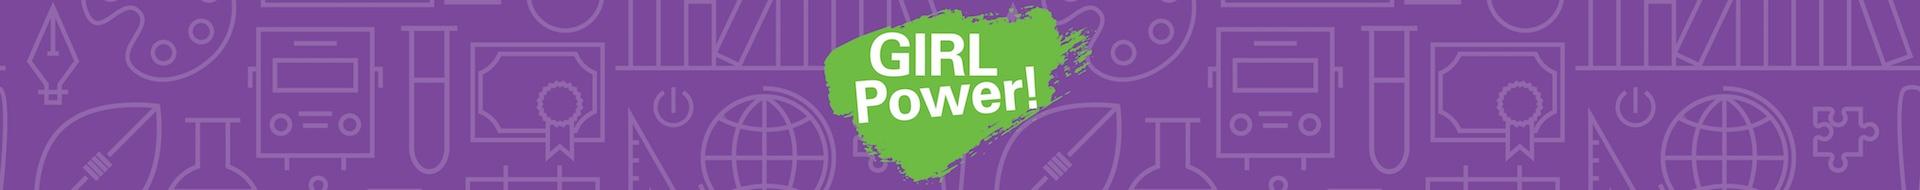 GIRL Power!